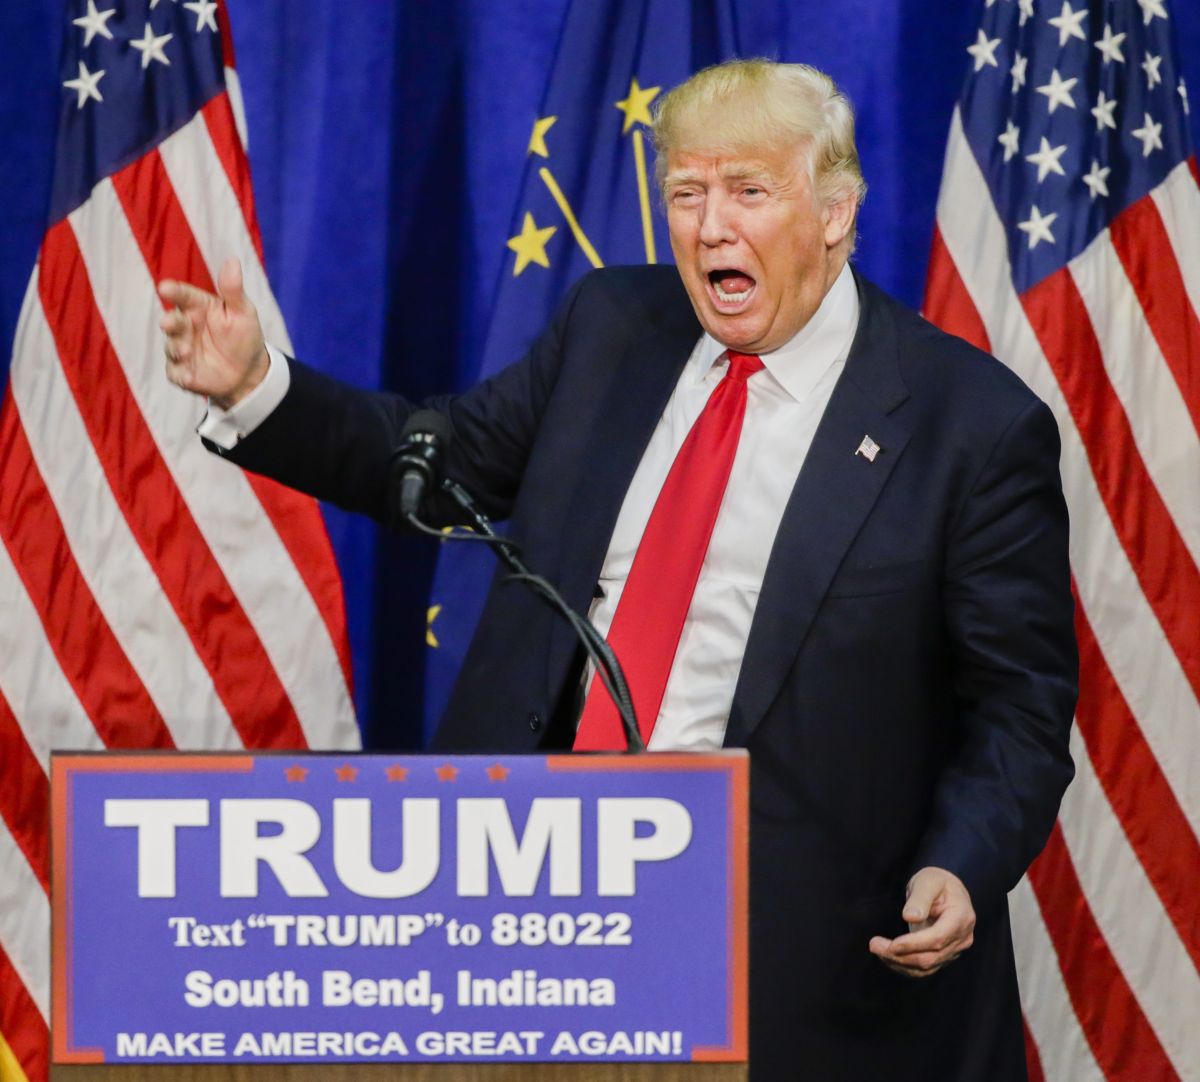 El precandidato presidencial republicano Donald Trump habla en un acto de campaña.